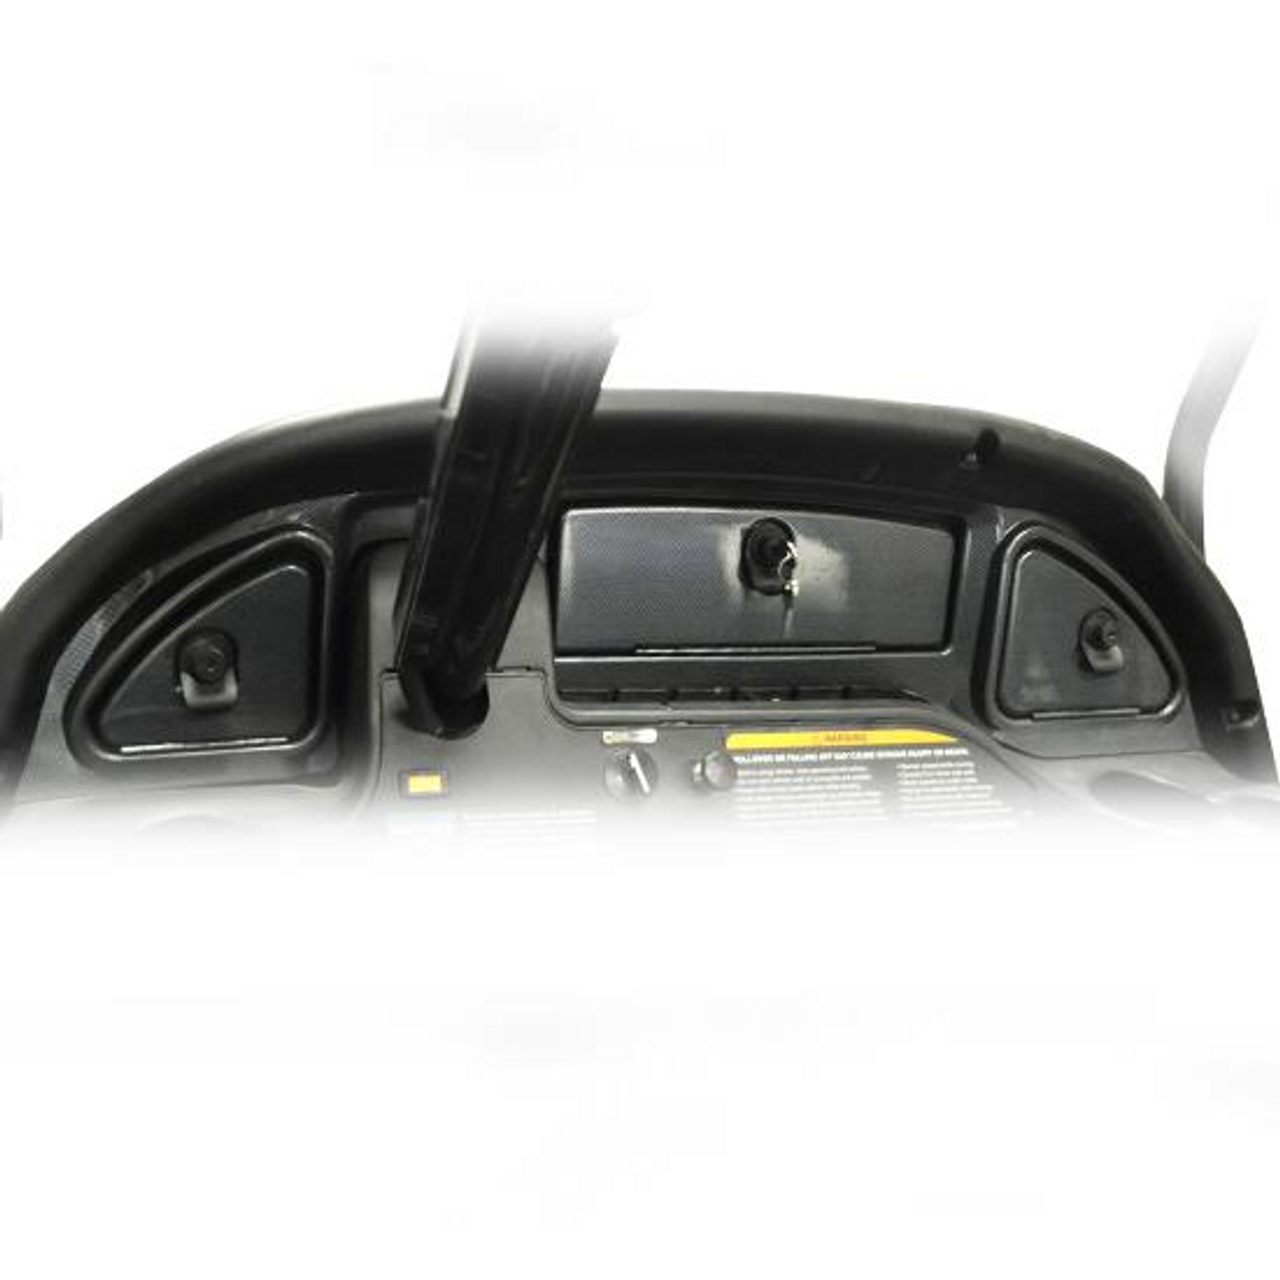 2008-Up Carbon Fiber Dash fits Club Car Precedent, 23-001